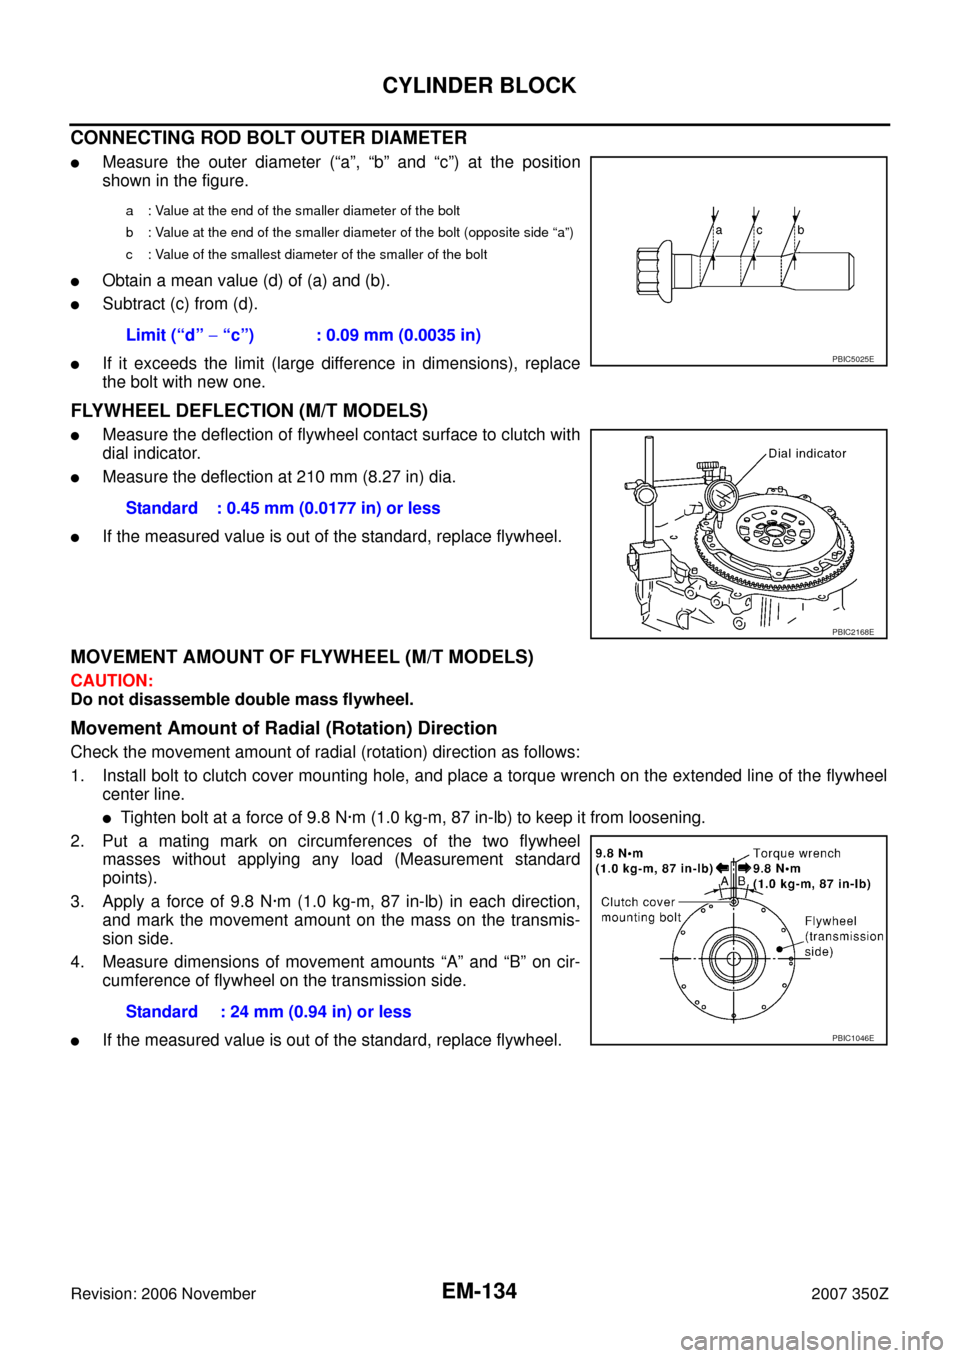 NISSAN 350Z 2007 Z33 Engine Mechanical Workshop Manual EM-134
CYLINDER BLOCK
Revision: 2006 November2007 350Z
CONNECTING ROD BOLT OUTER DIAMETER
Measure the outer diameter (“a”, “b” and “c”) at the position
shown in the figure.
Obtain a mean